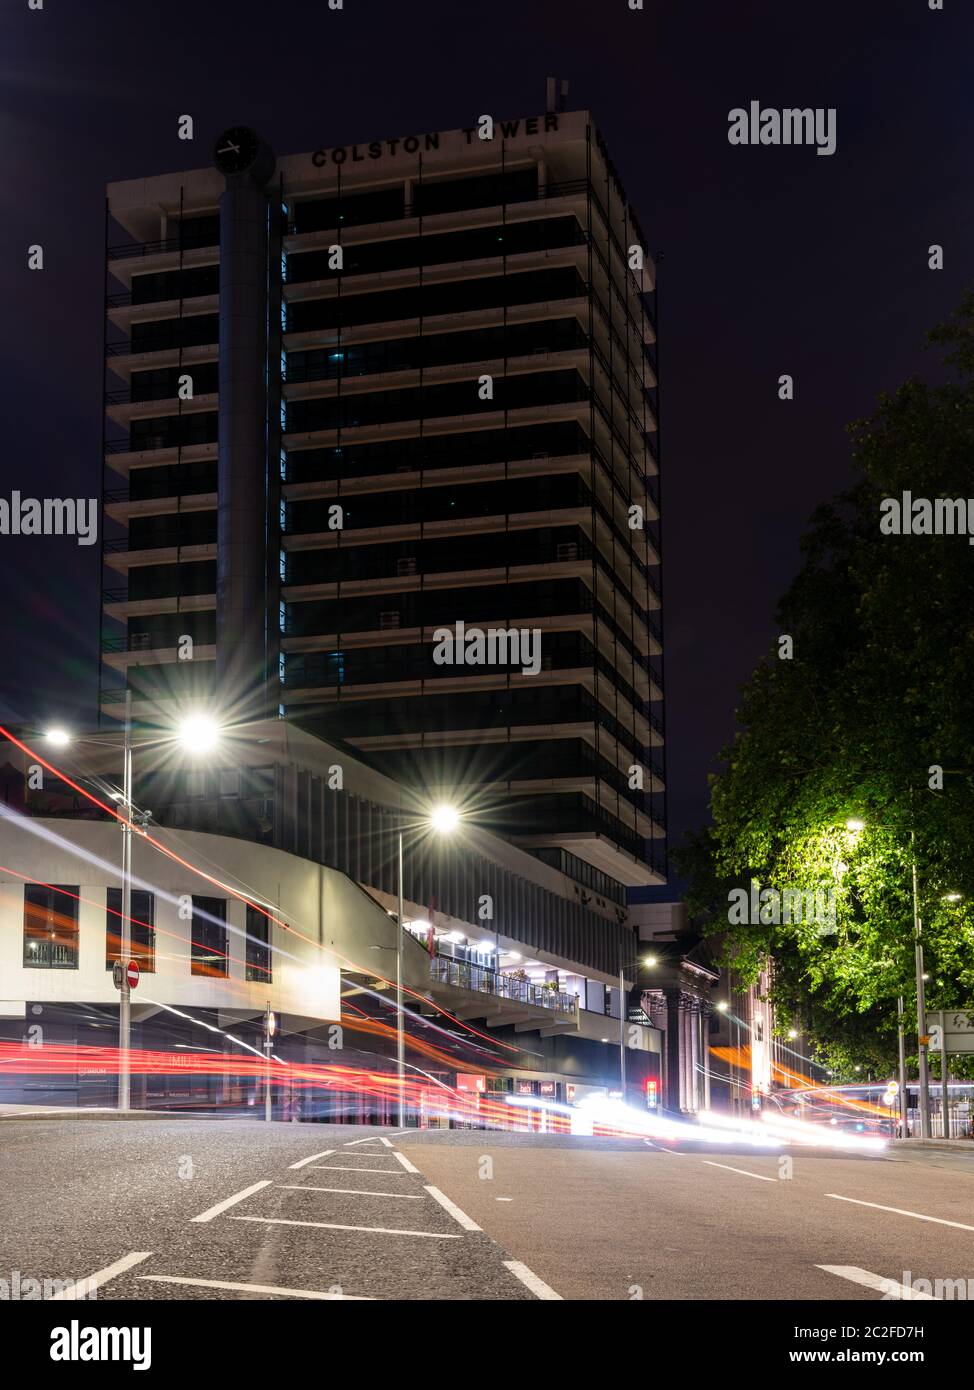 Bristol, Angleterre, Royaume-Uni - 8 juin 2020 : la circulation laisse des sentiers de lumière la nuit sur la parade de St Augustine, sous le bureau de Colston Tower. Banque D'Images